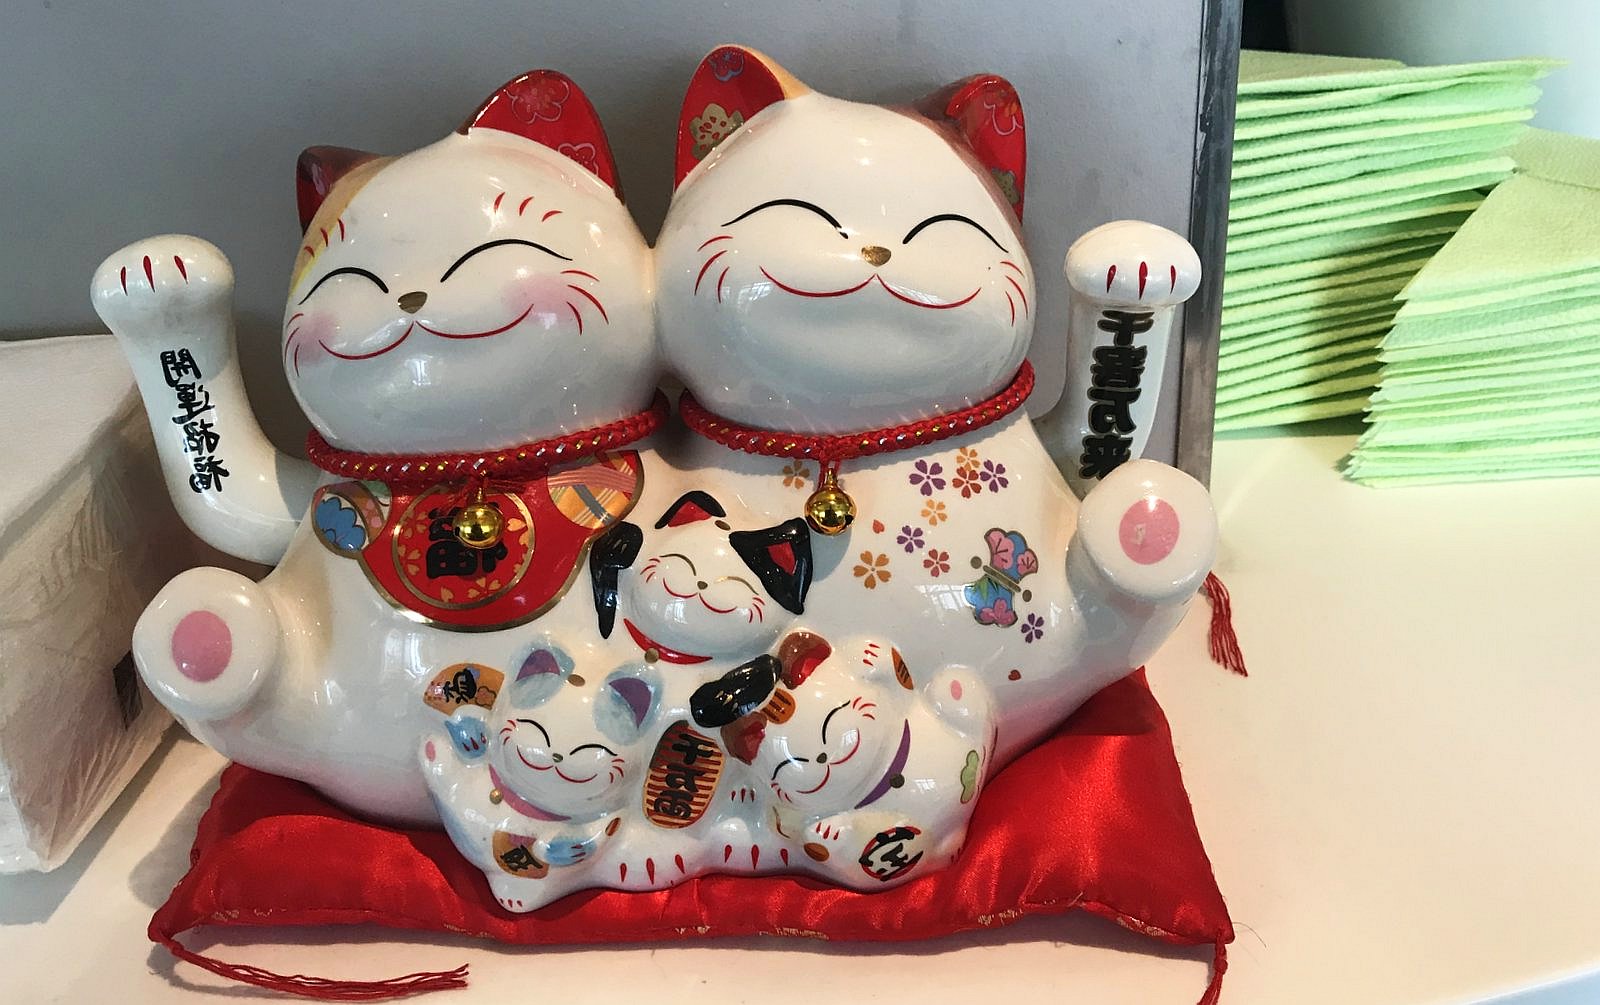 kočka, kočky, keramika, úsměv / -ima-